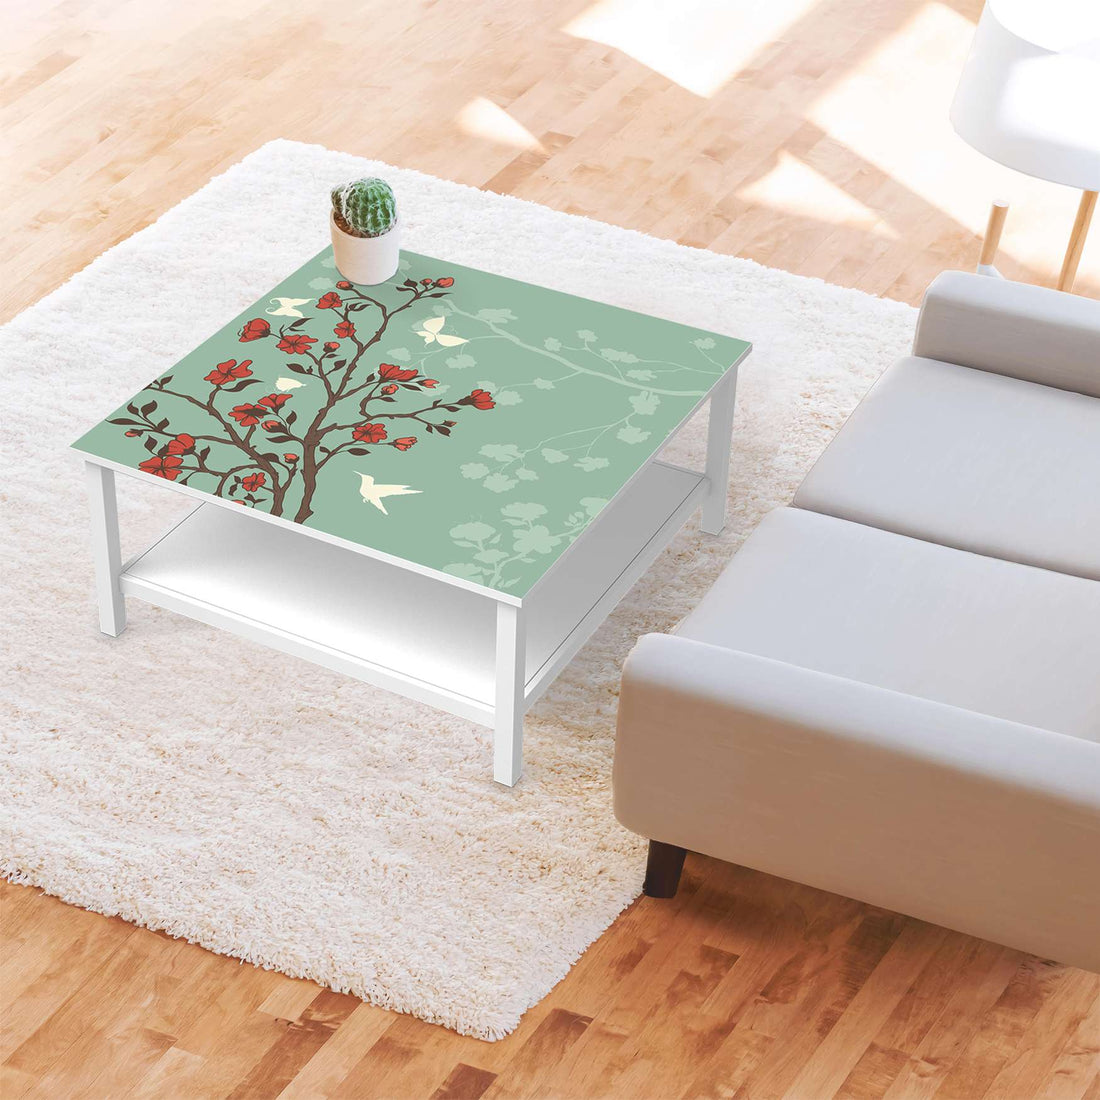 Klebefolie für Möbel Blütenzauber - IKEA Hemnes Couchtisch 90x90 cm - Wohnzimmer